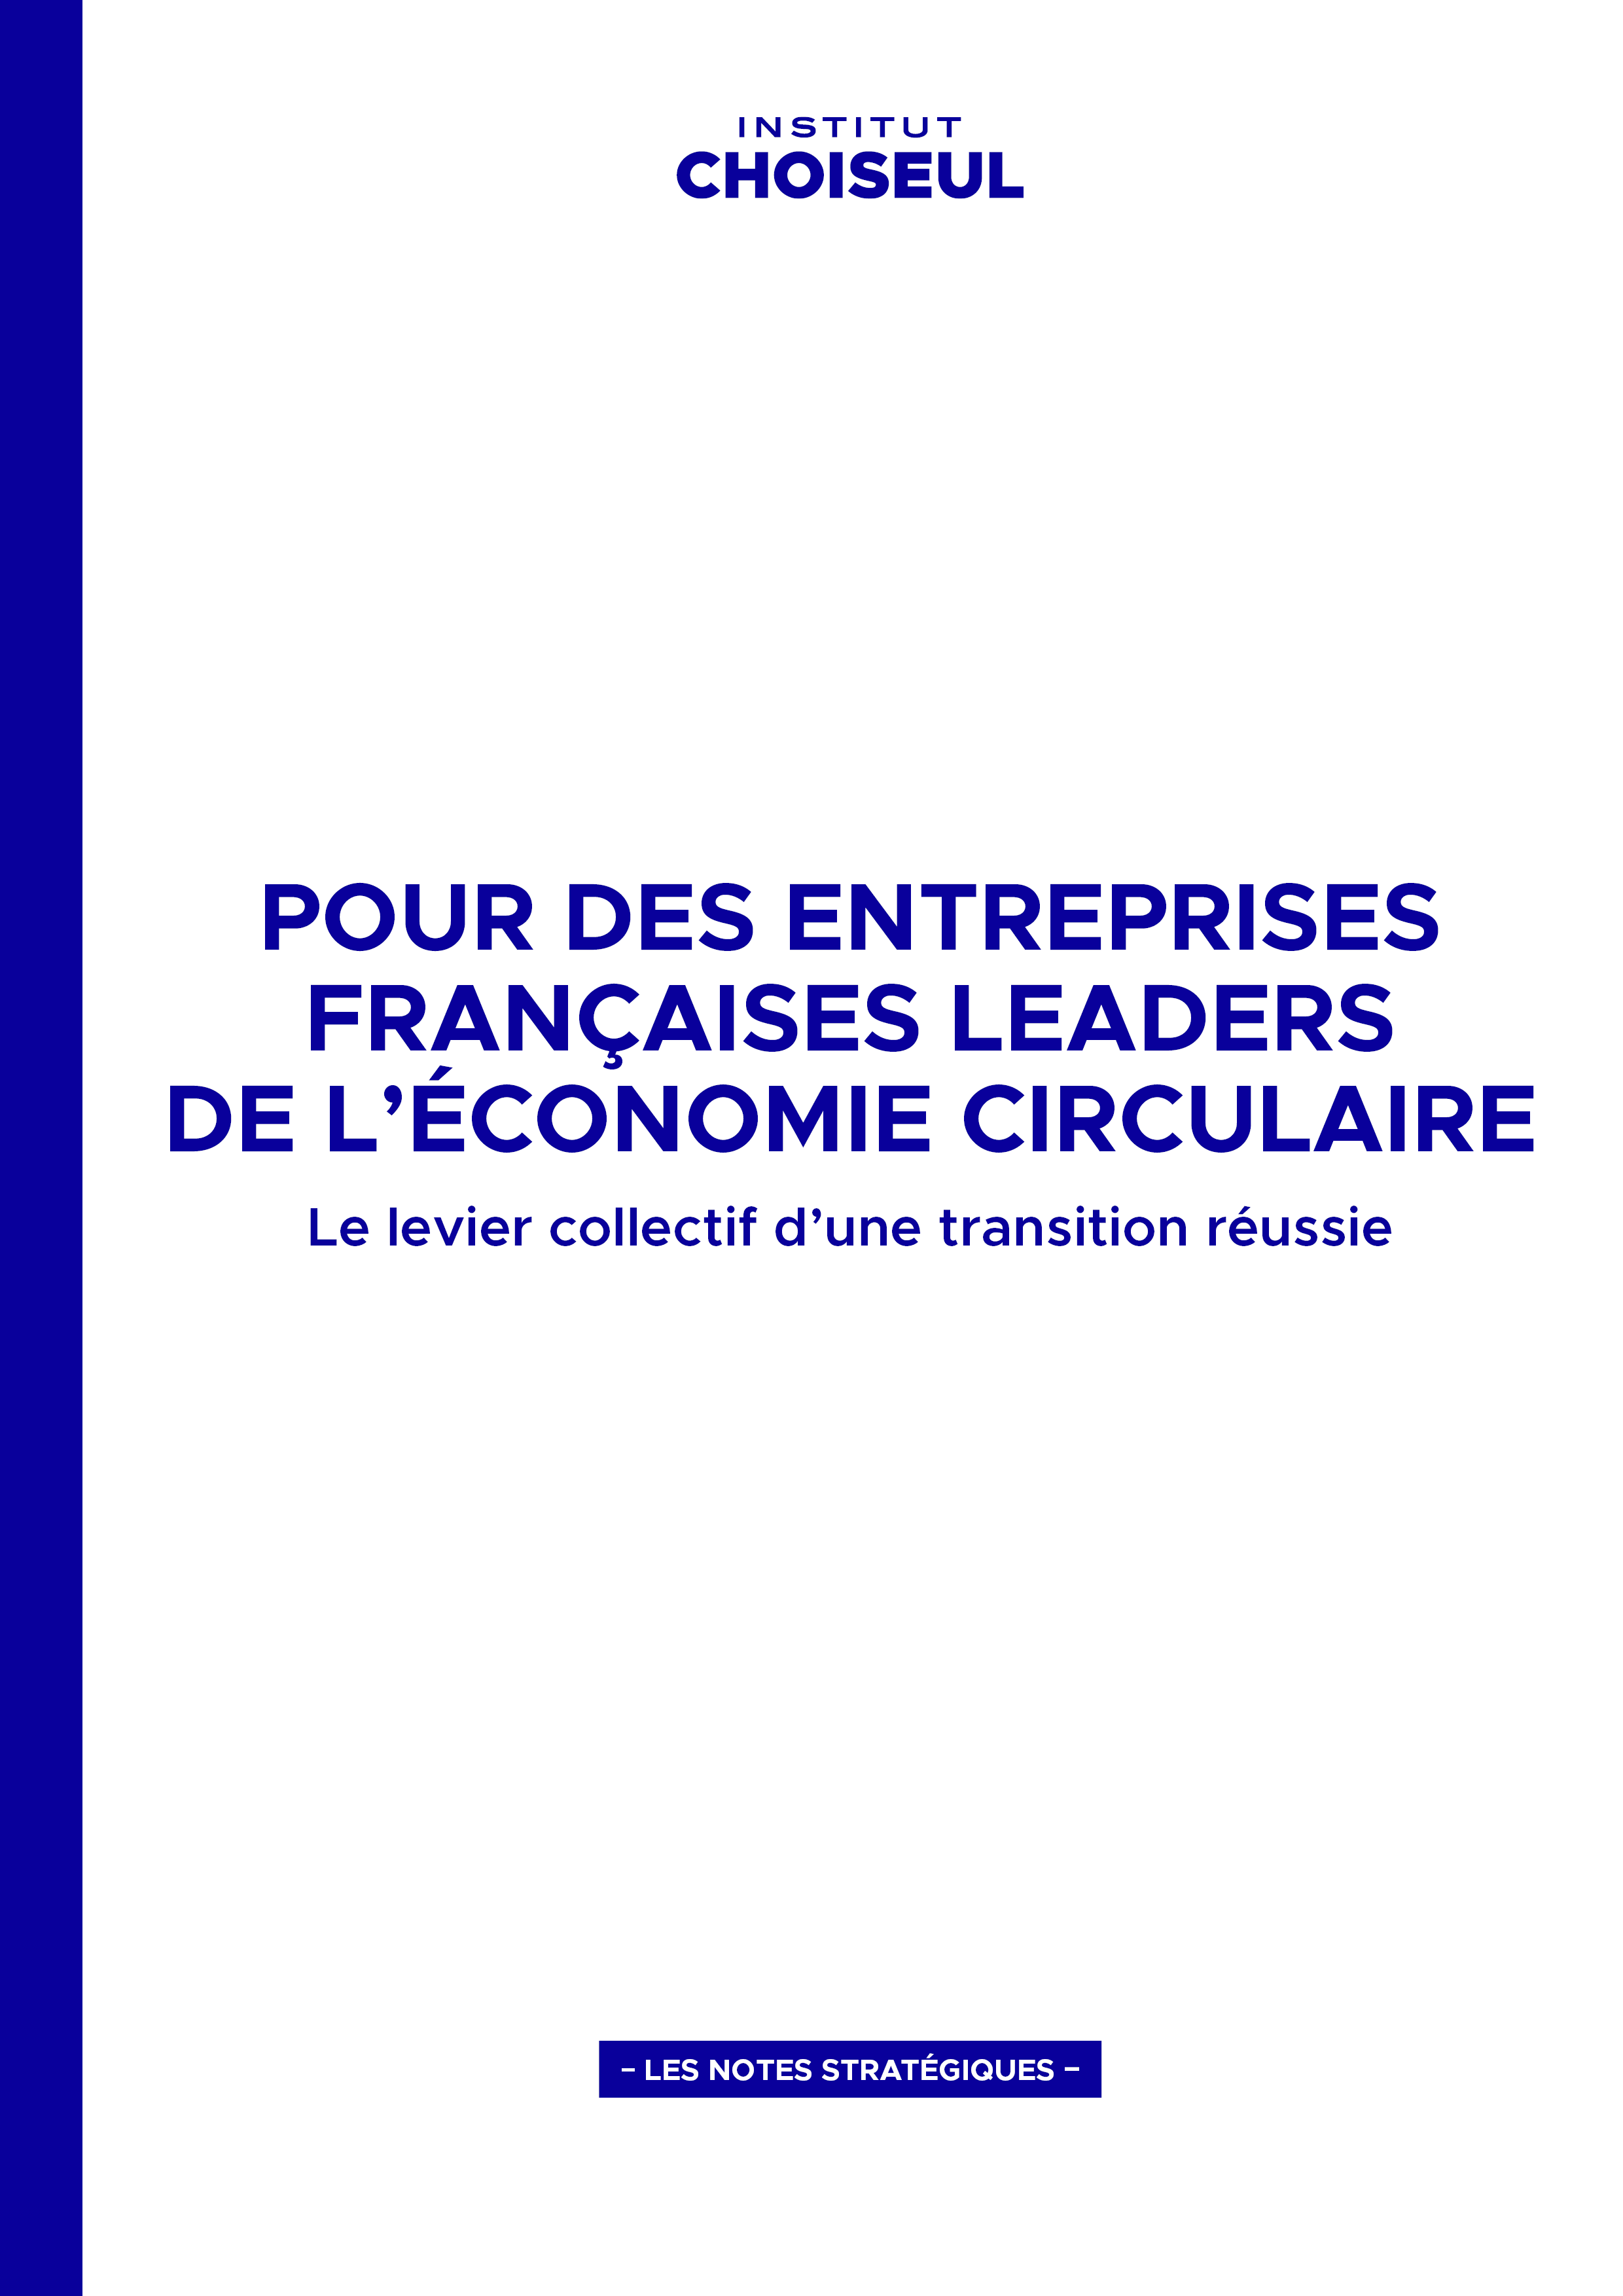 Pour des entreprises françaises leaders de l’économie circulaire